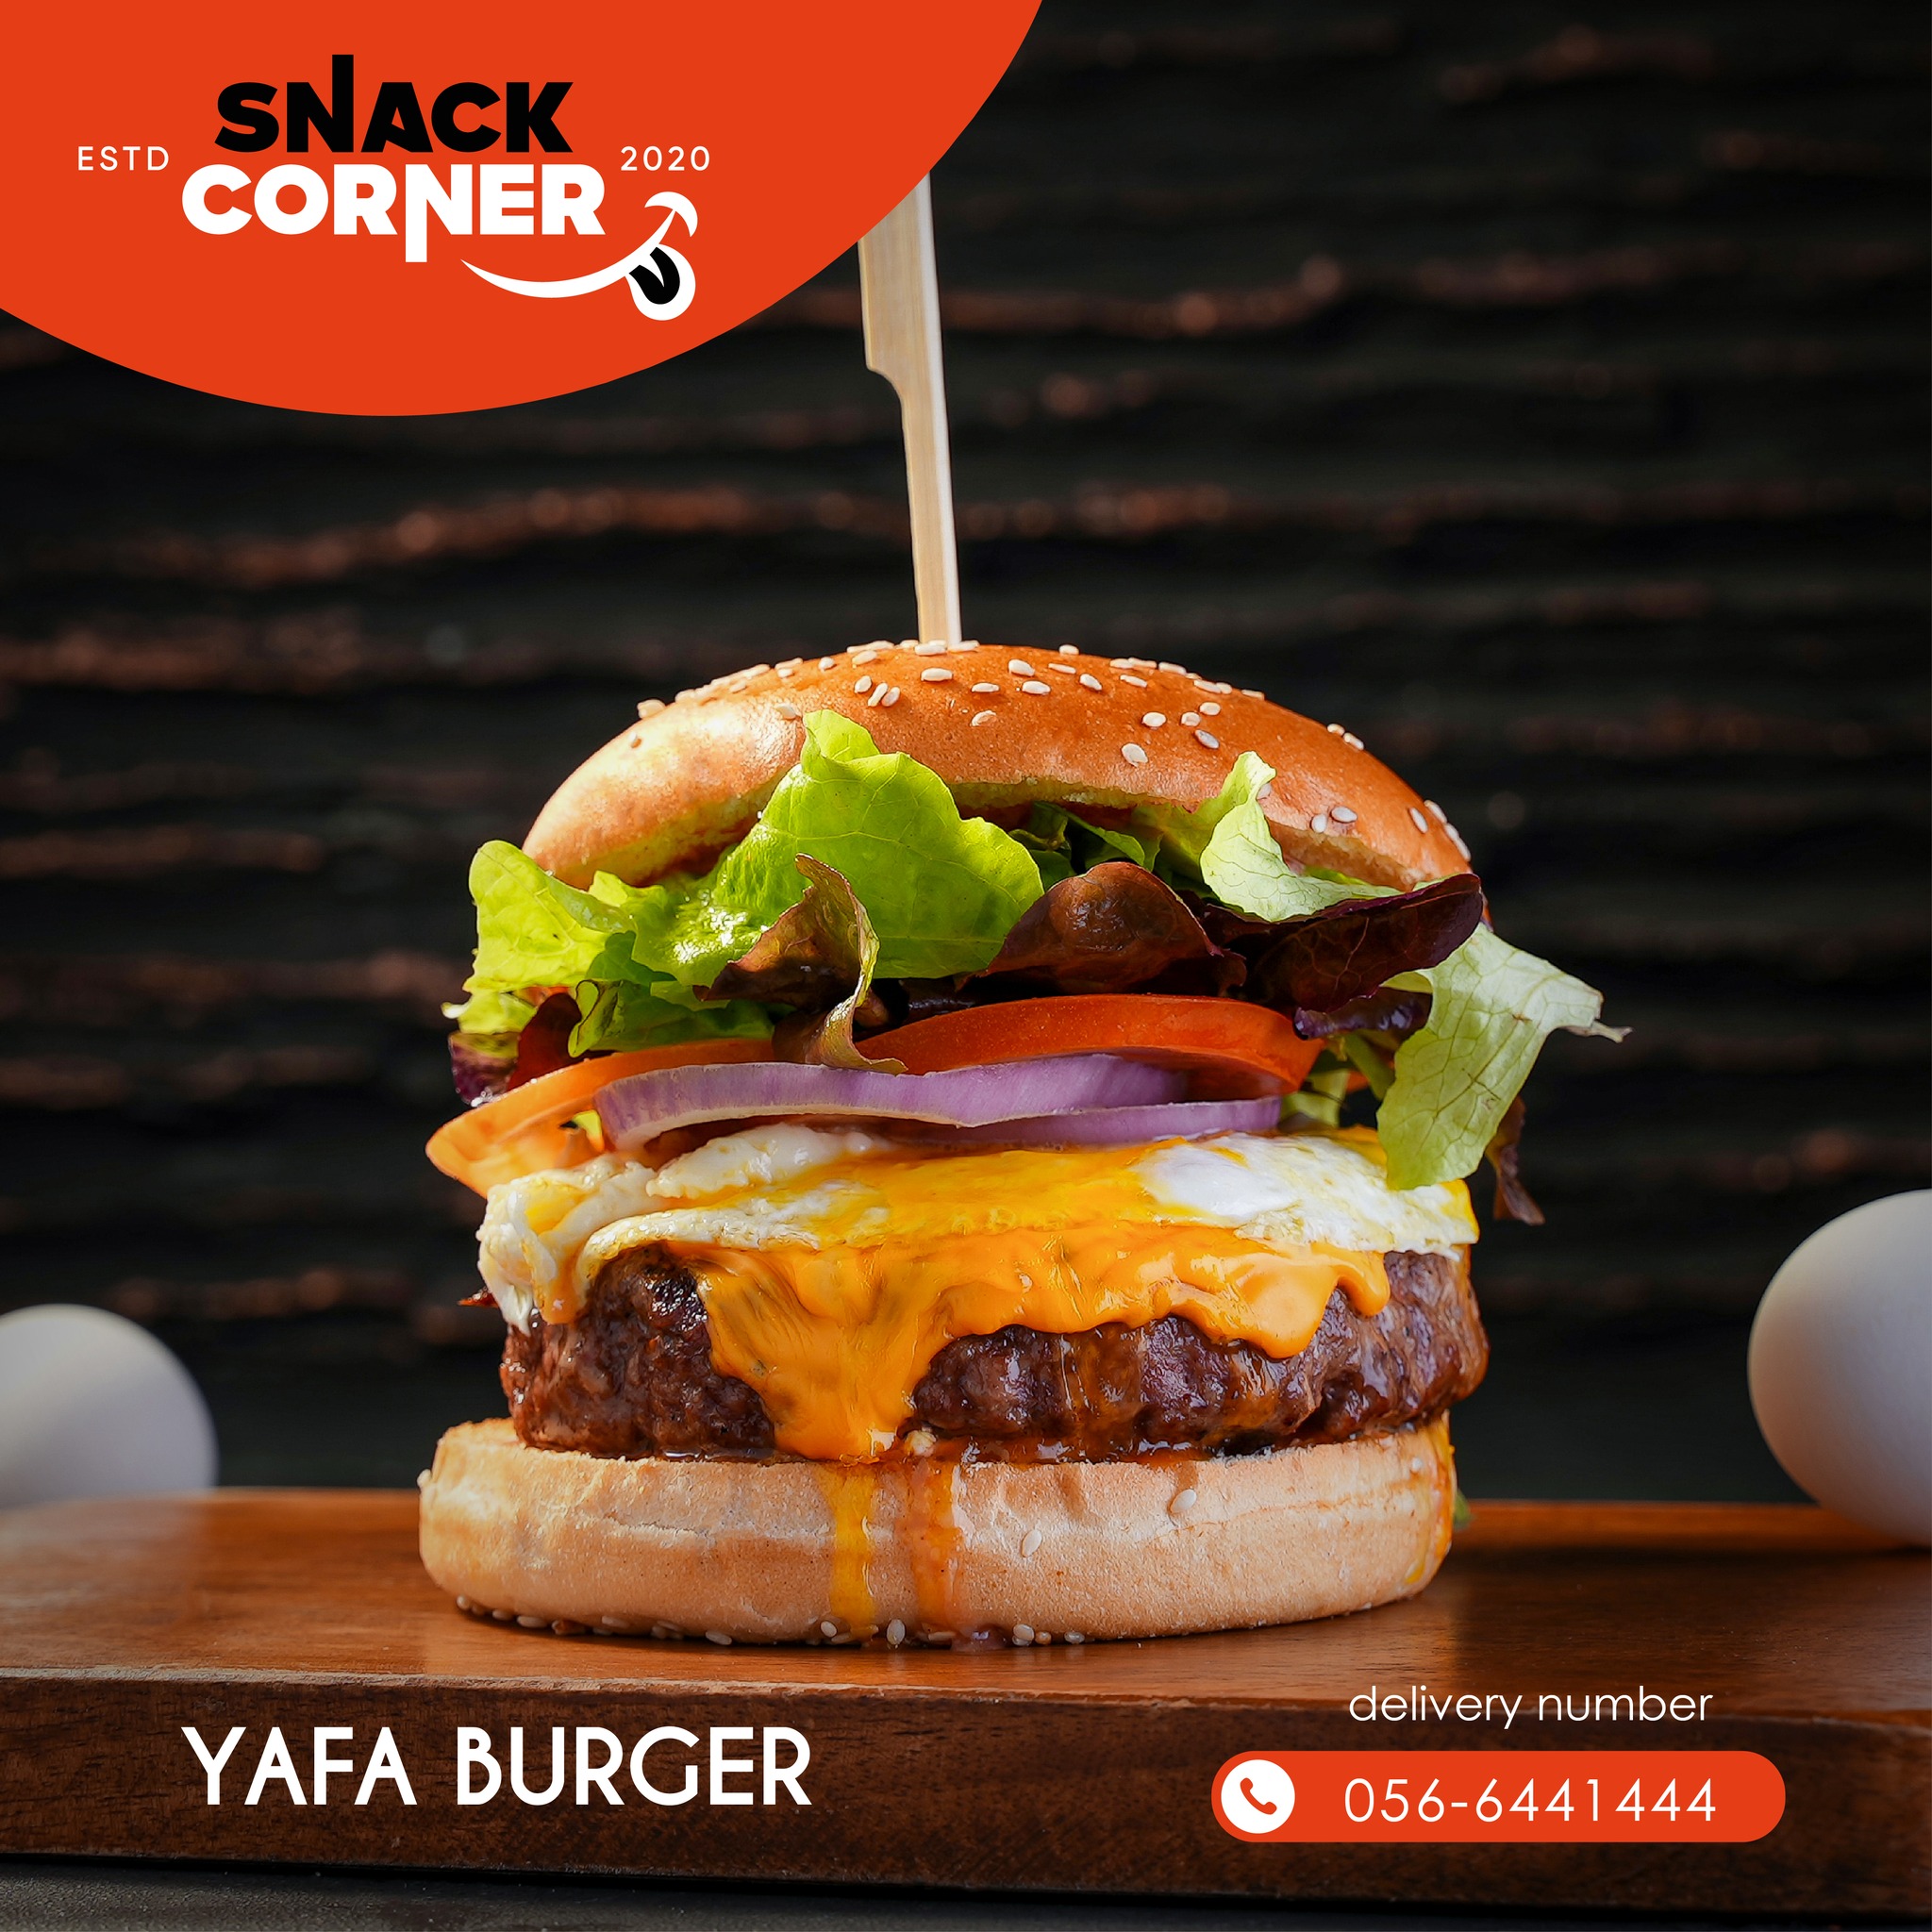 Yaffa Burger